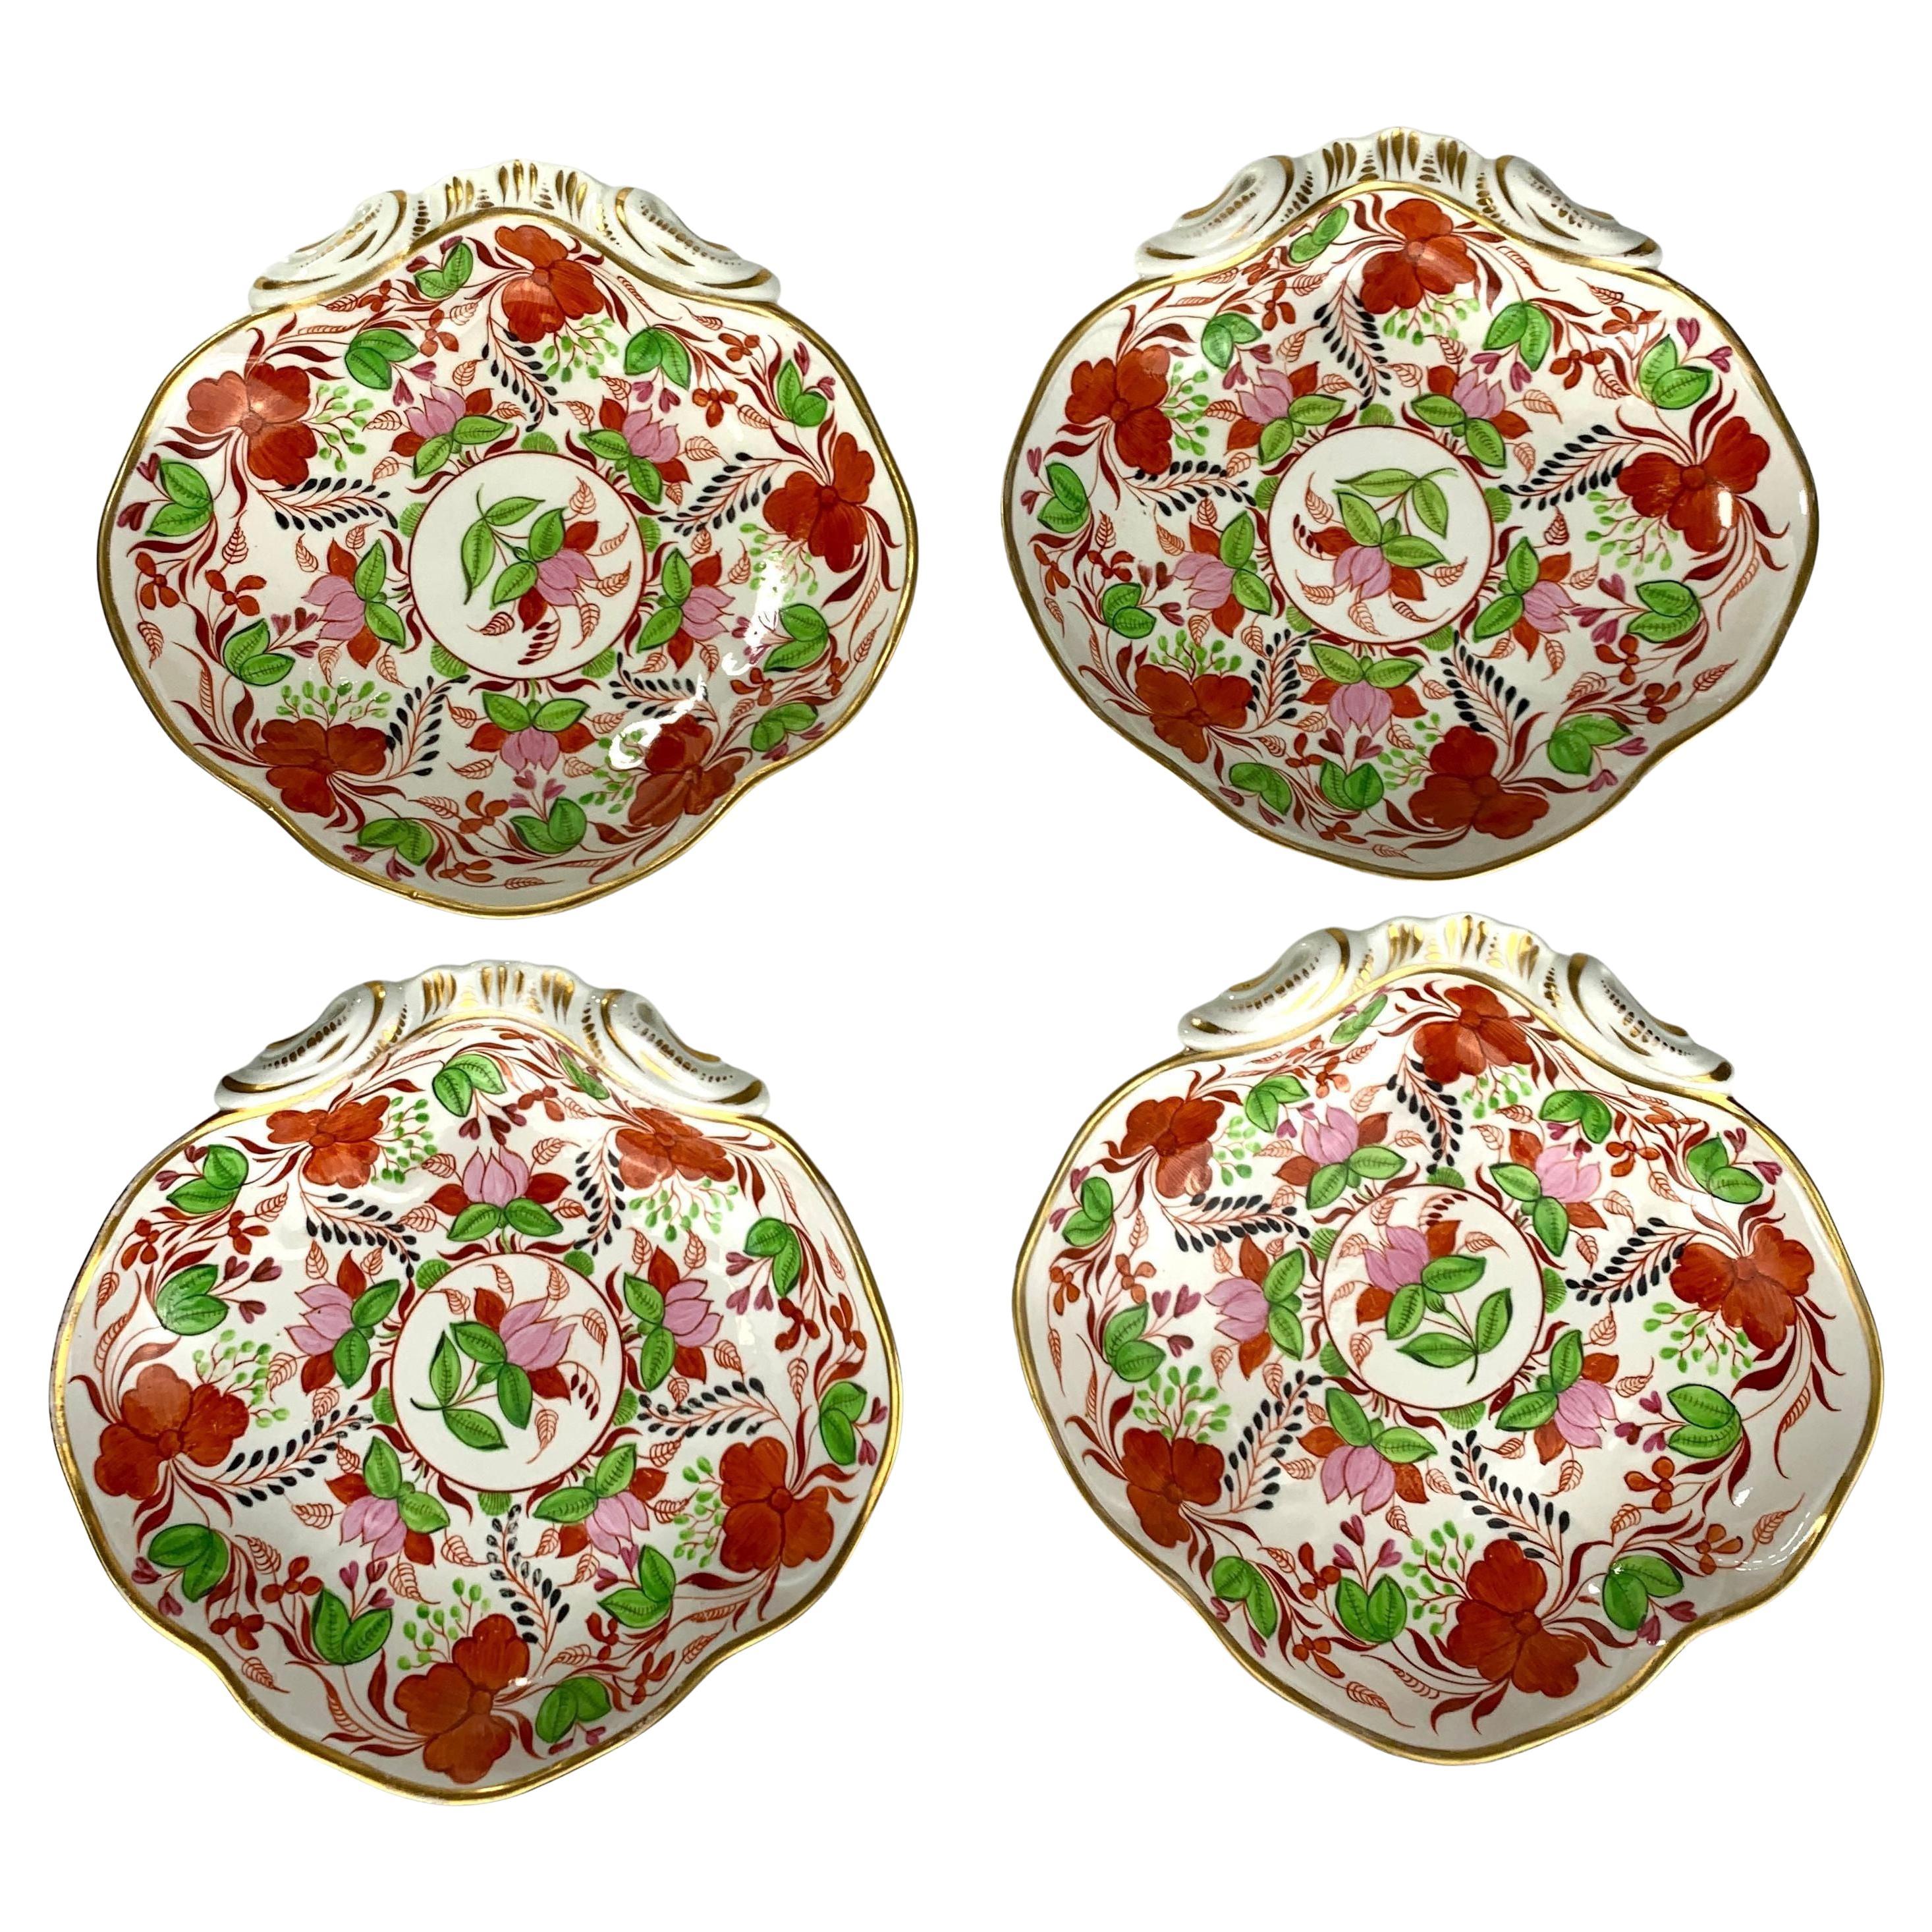 Quatre anciens plats en porcelaine anglaise en forme de coquillage fabriqués vers 1810